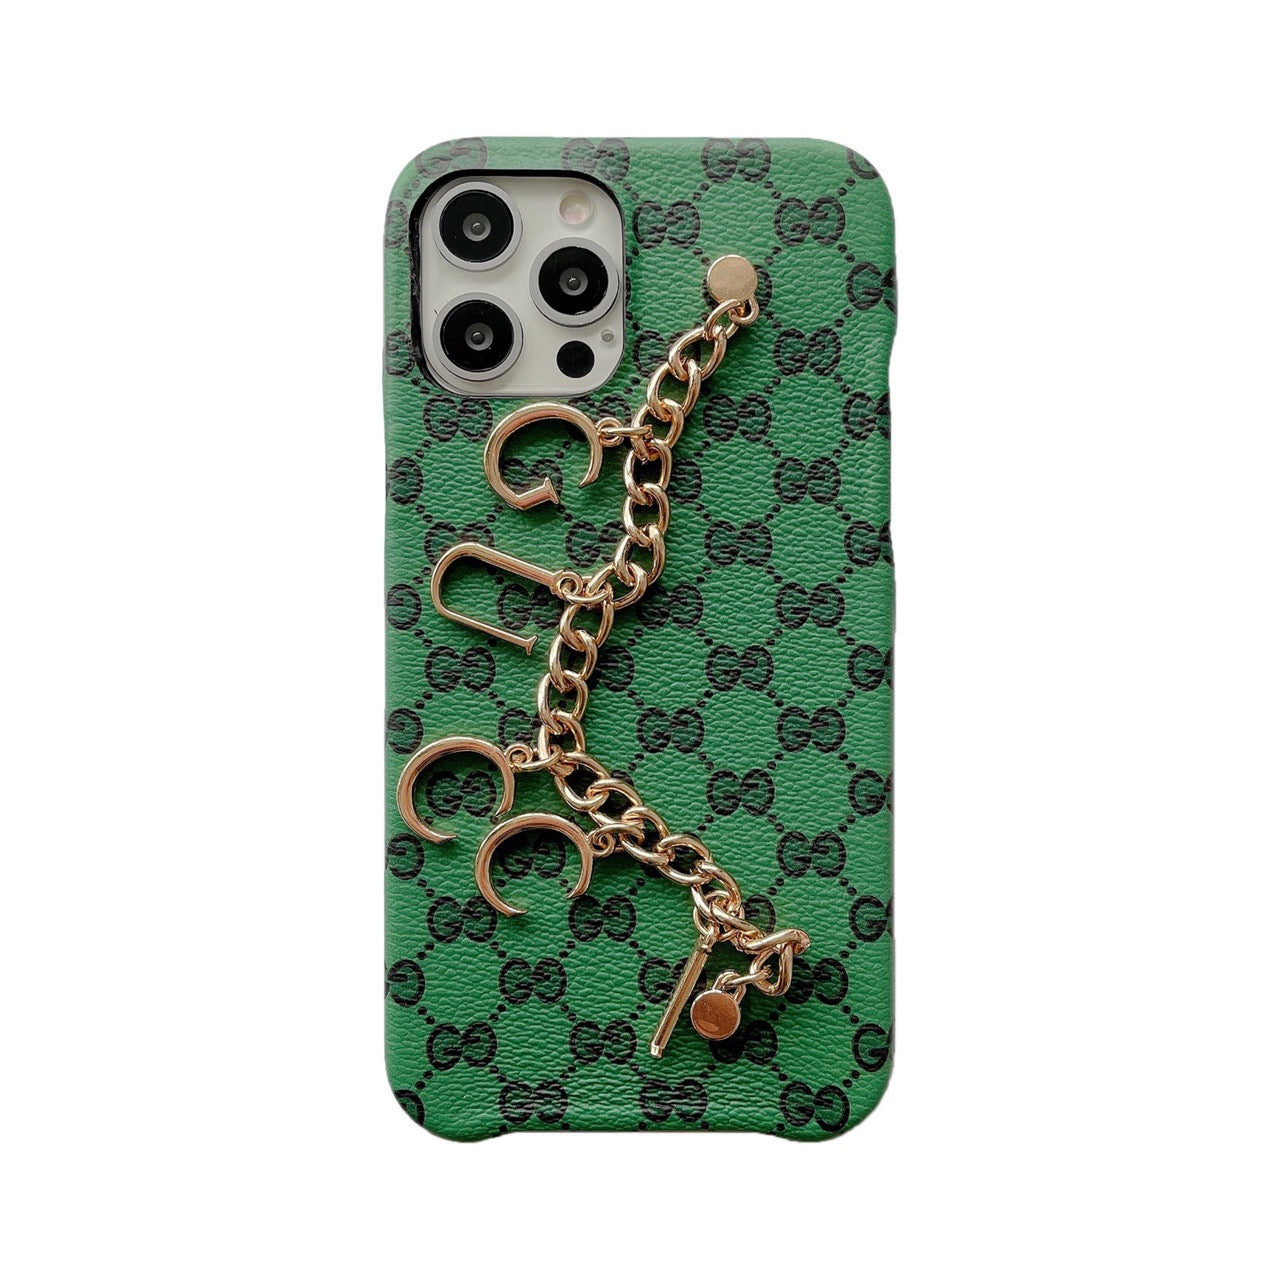 iPhone case - Gucci